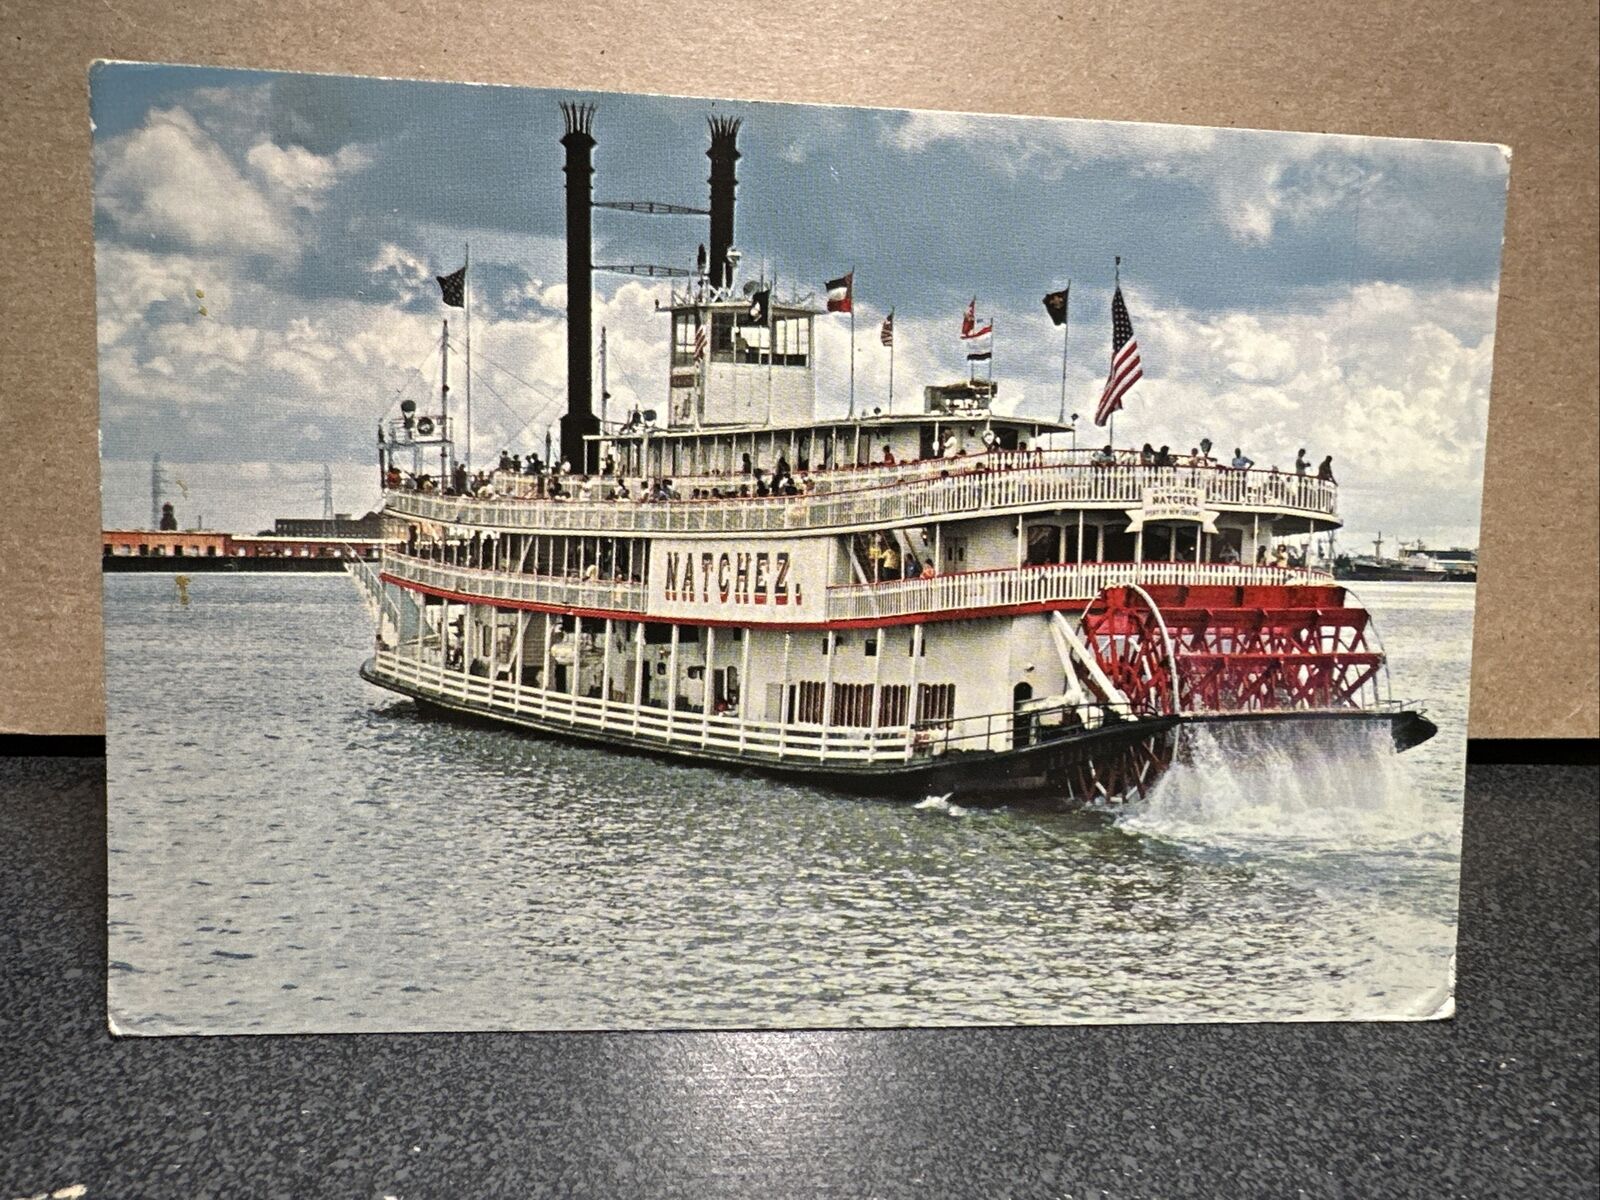 Sternwheeler Natchez Paddle Boat On Mississippi River Postcard